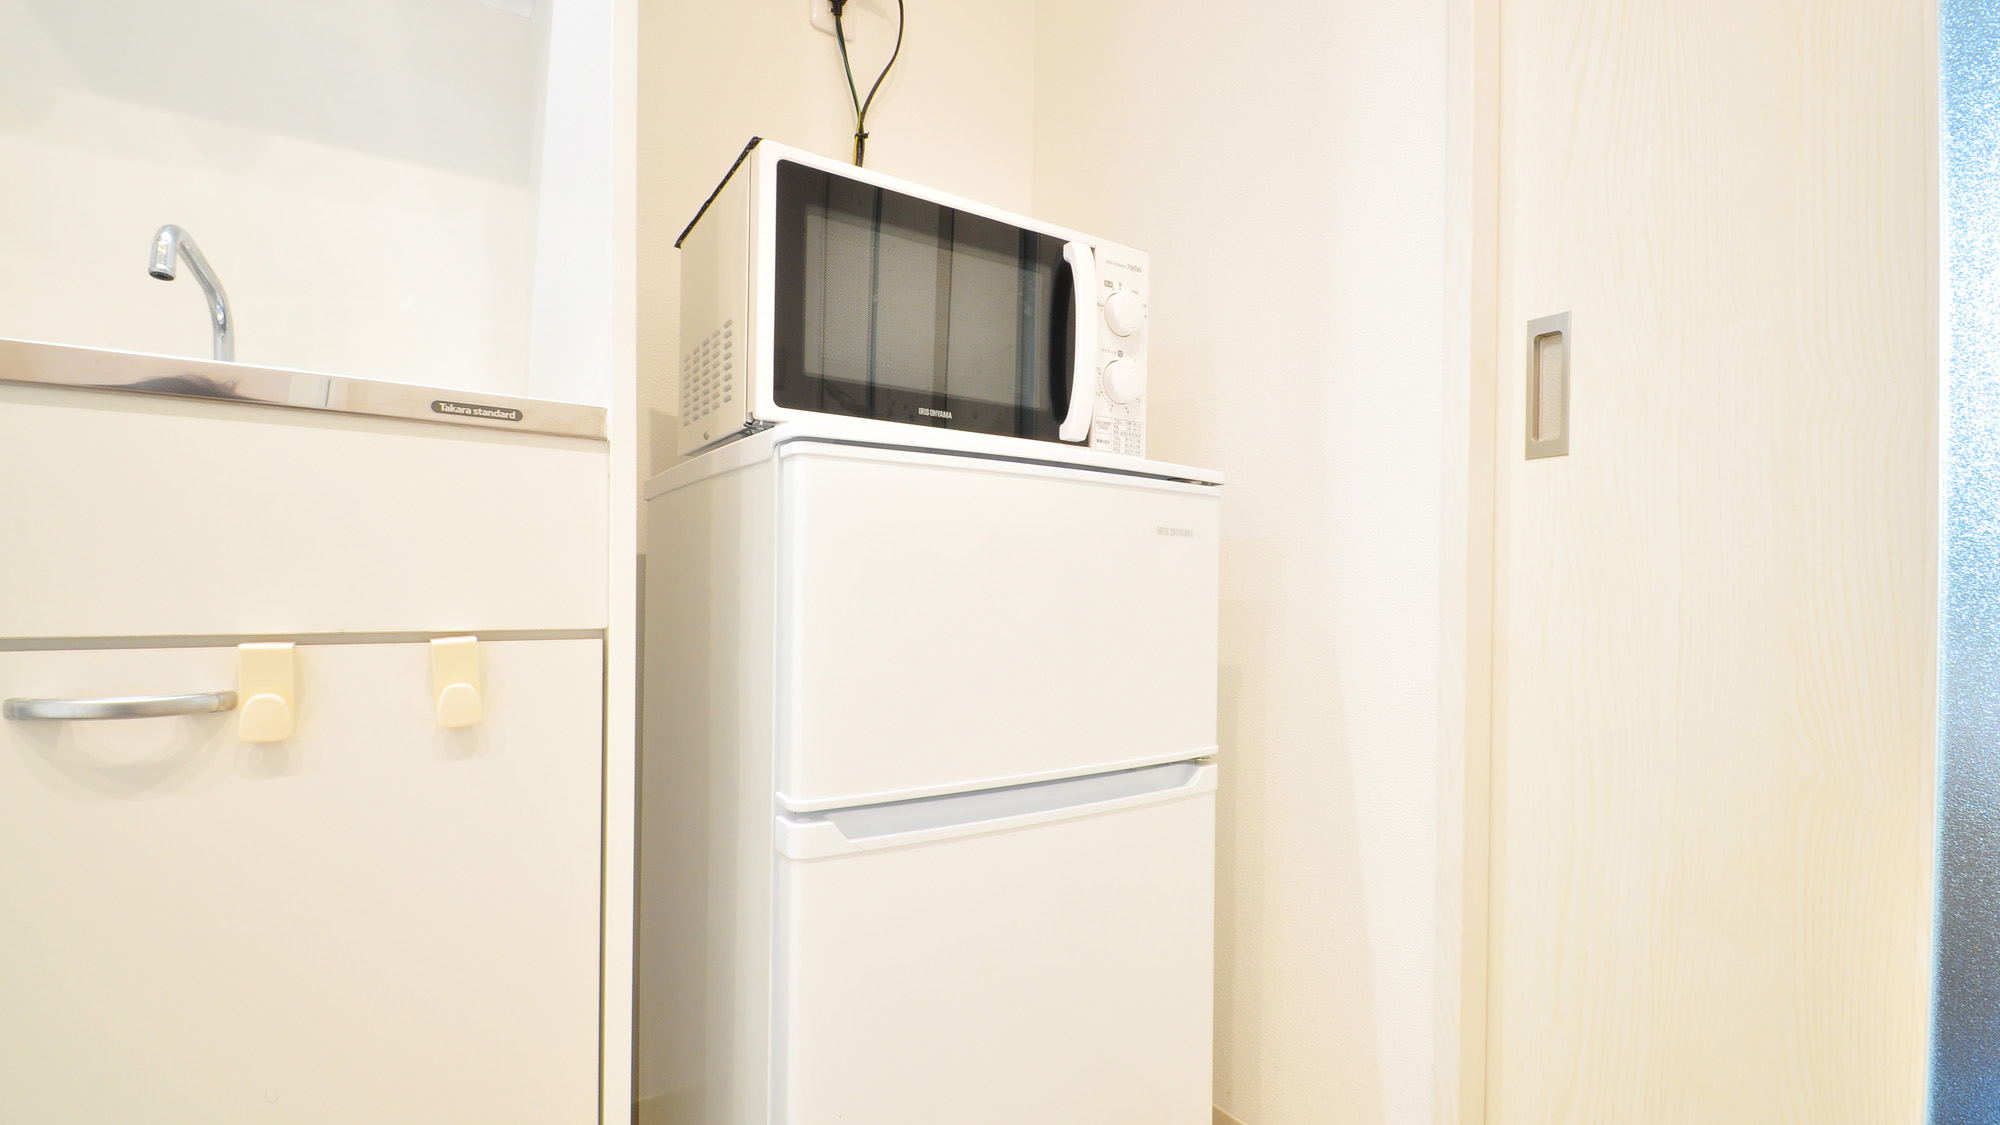 【家電】冷蔵庫と電子レンジ